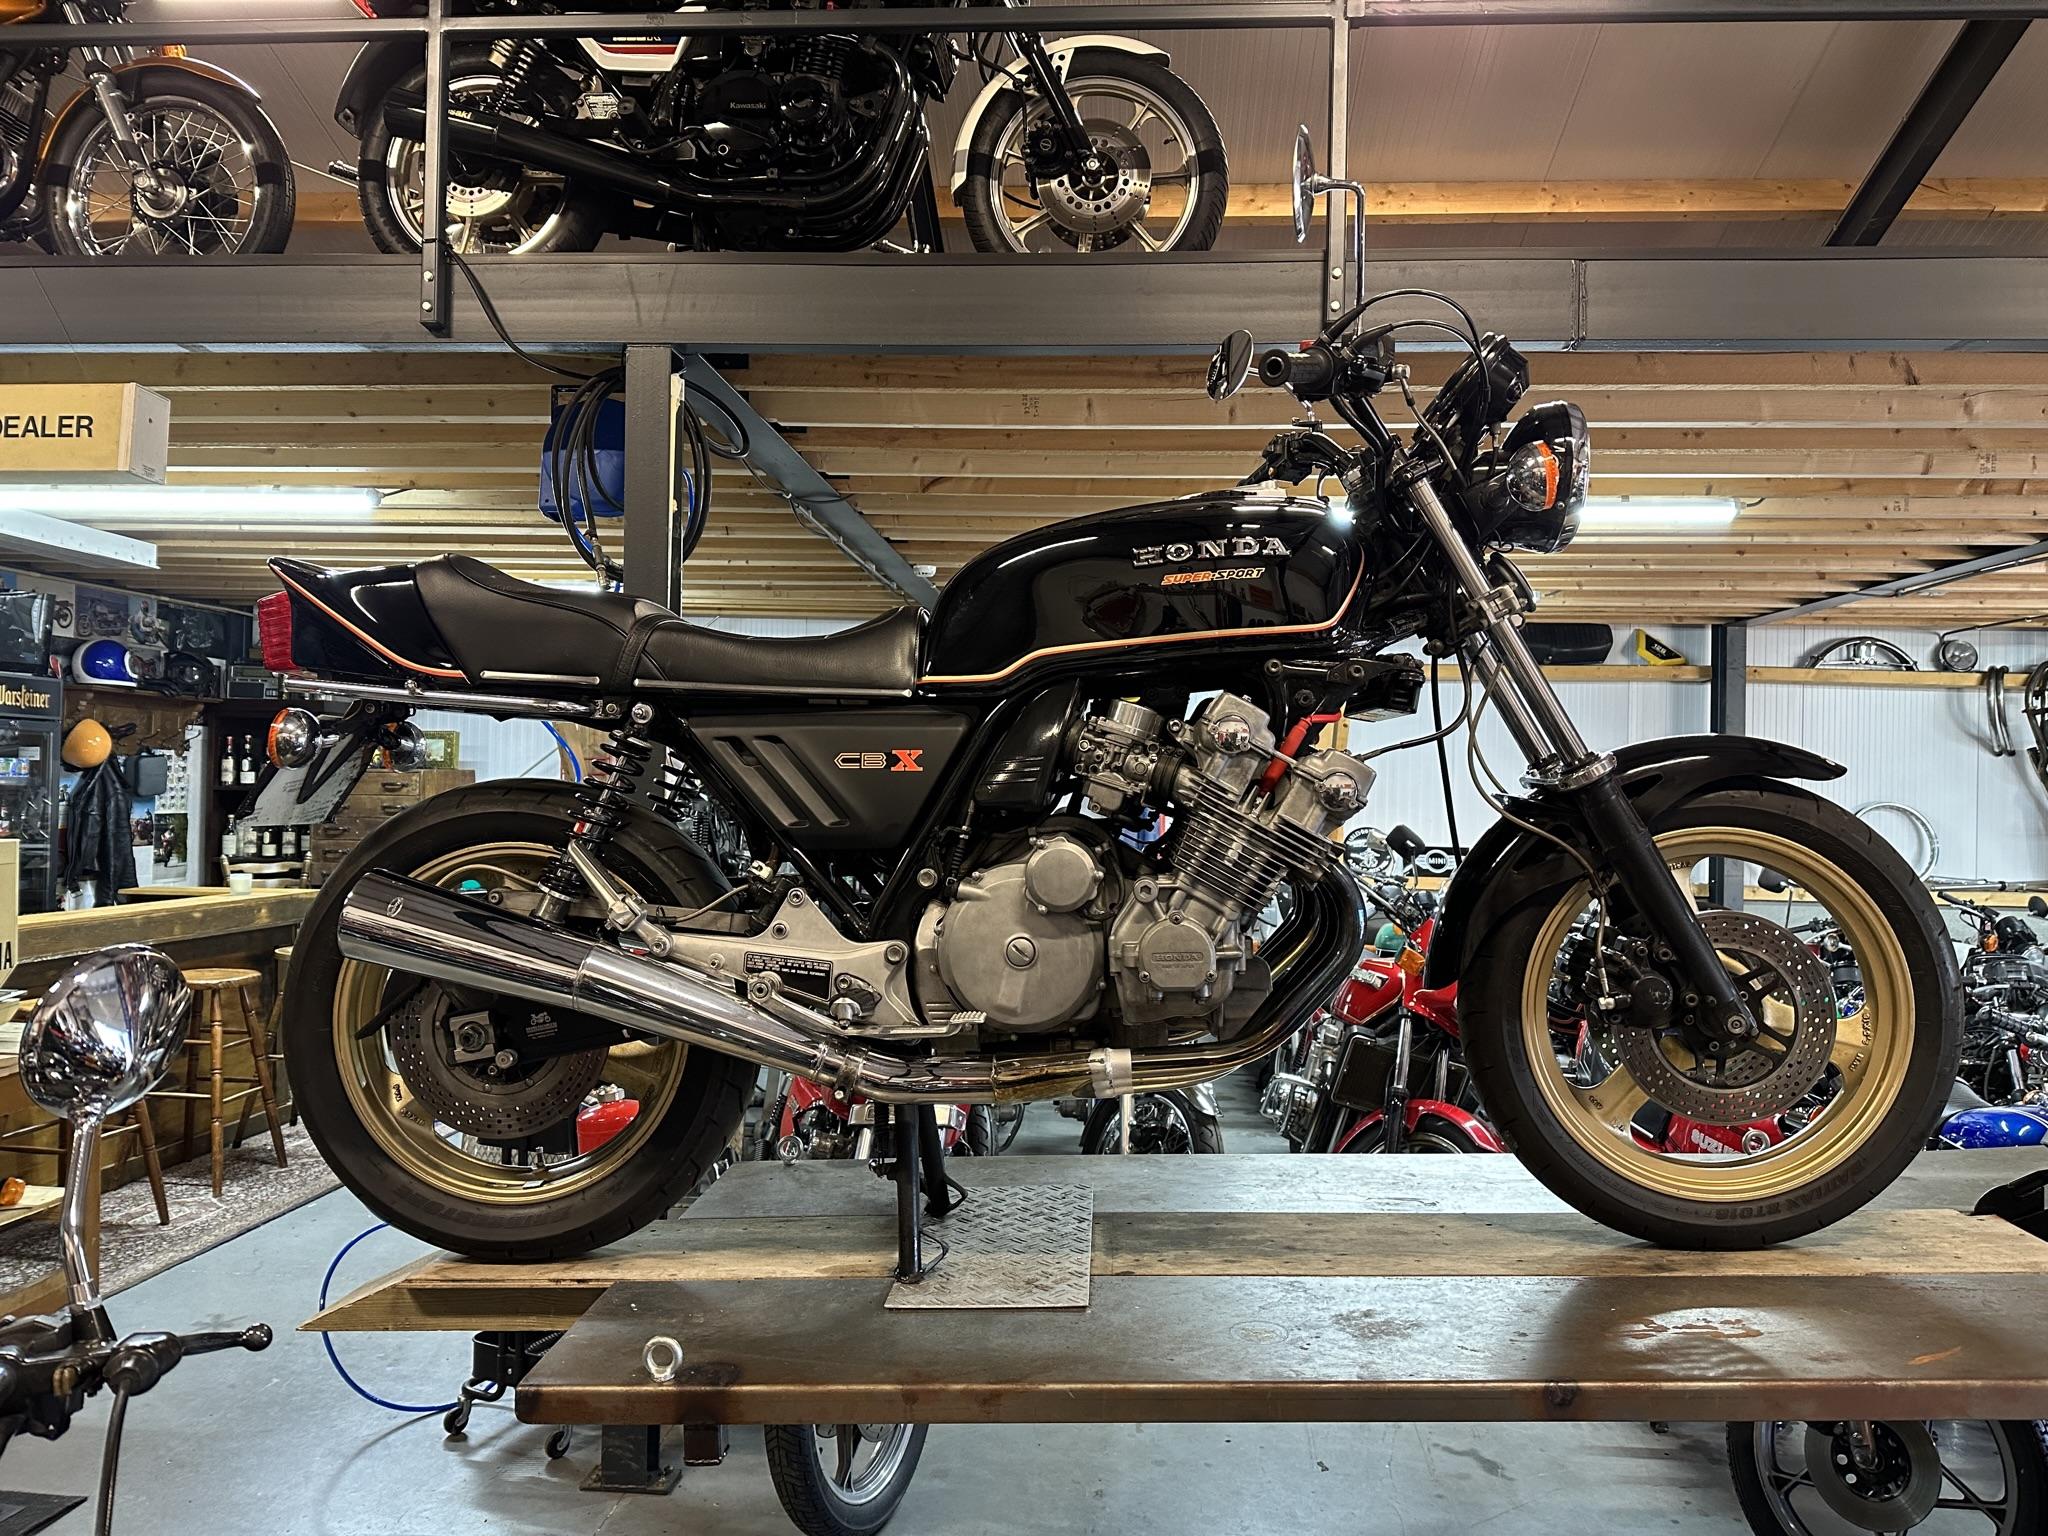 Honda CBX bikes for sale in Australia 